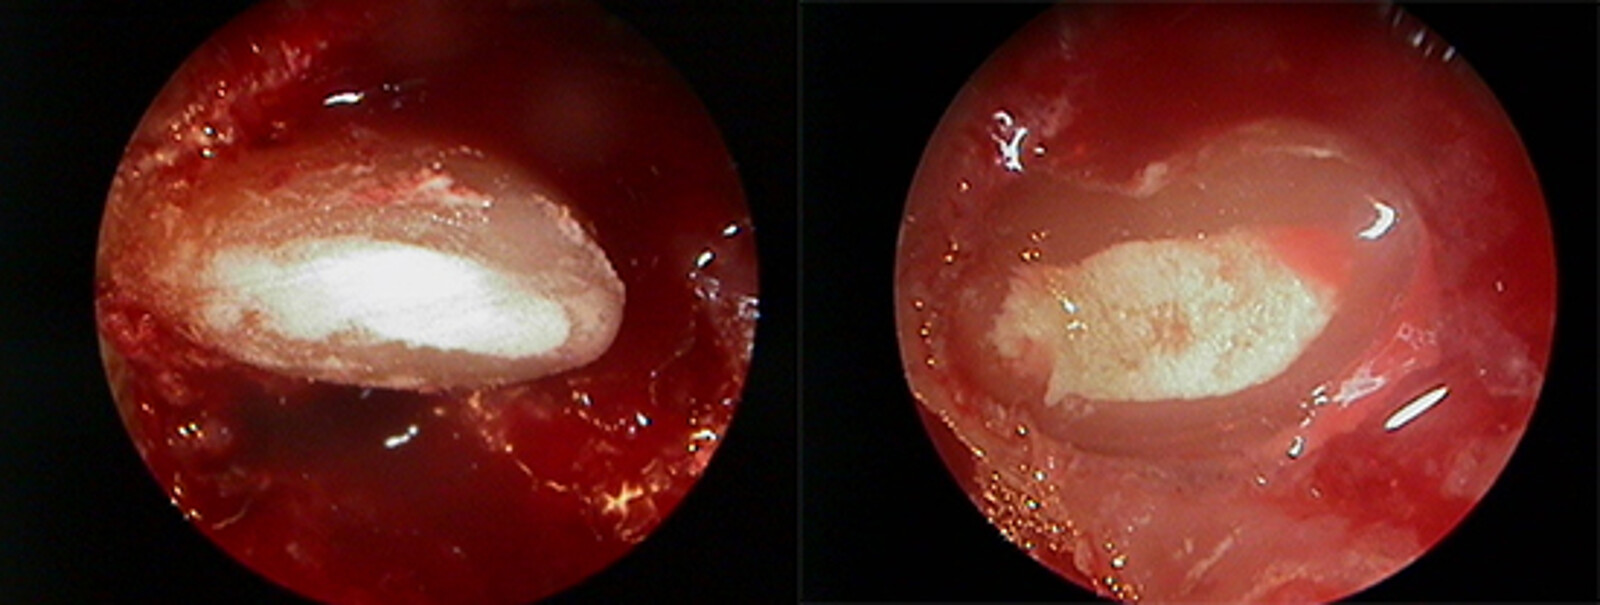 Figura 7 y 8. Vistas de endoscopio de la obturaciÃ³n.